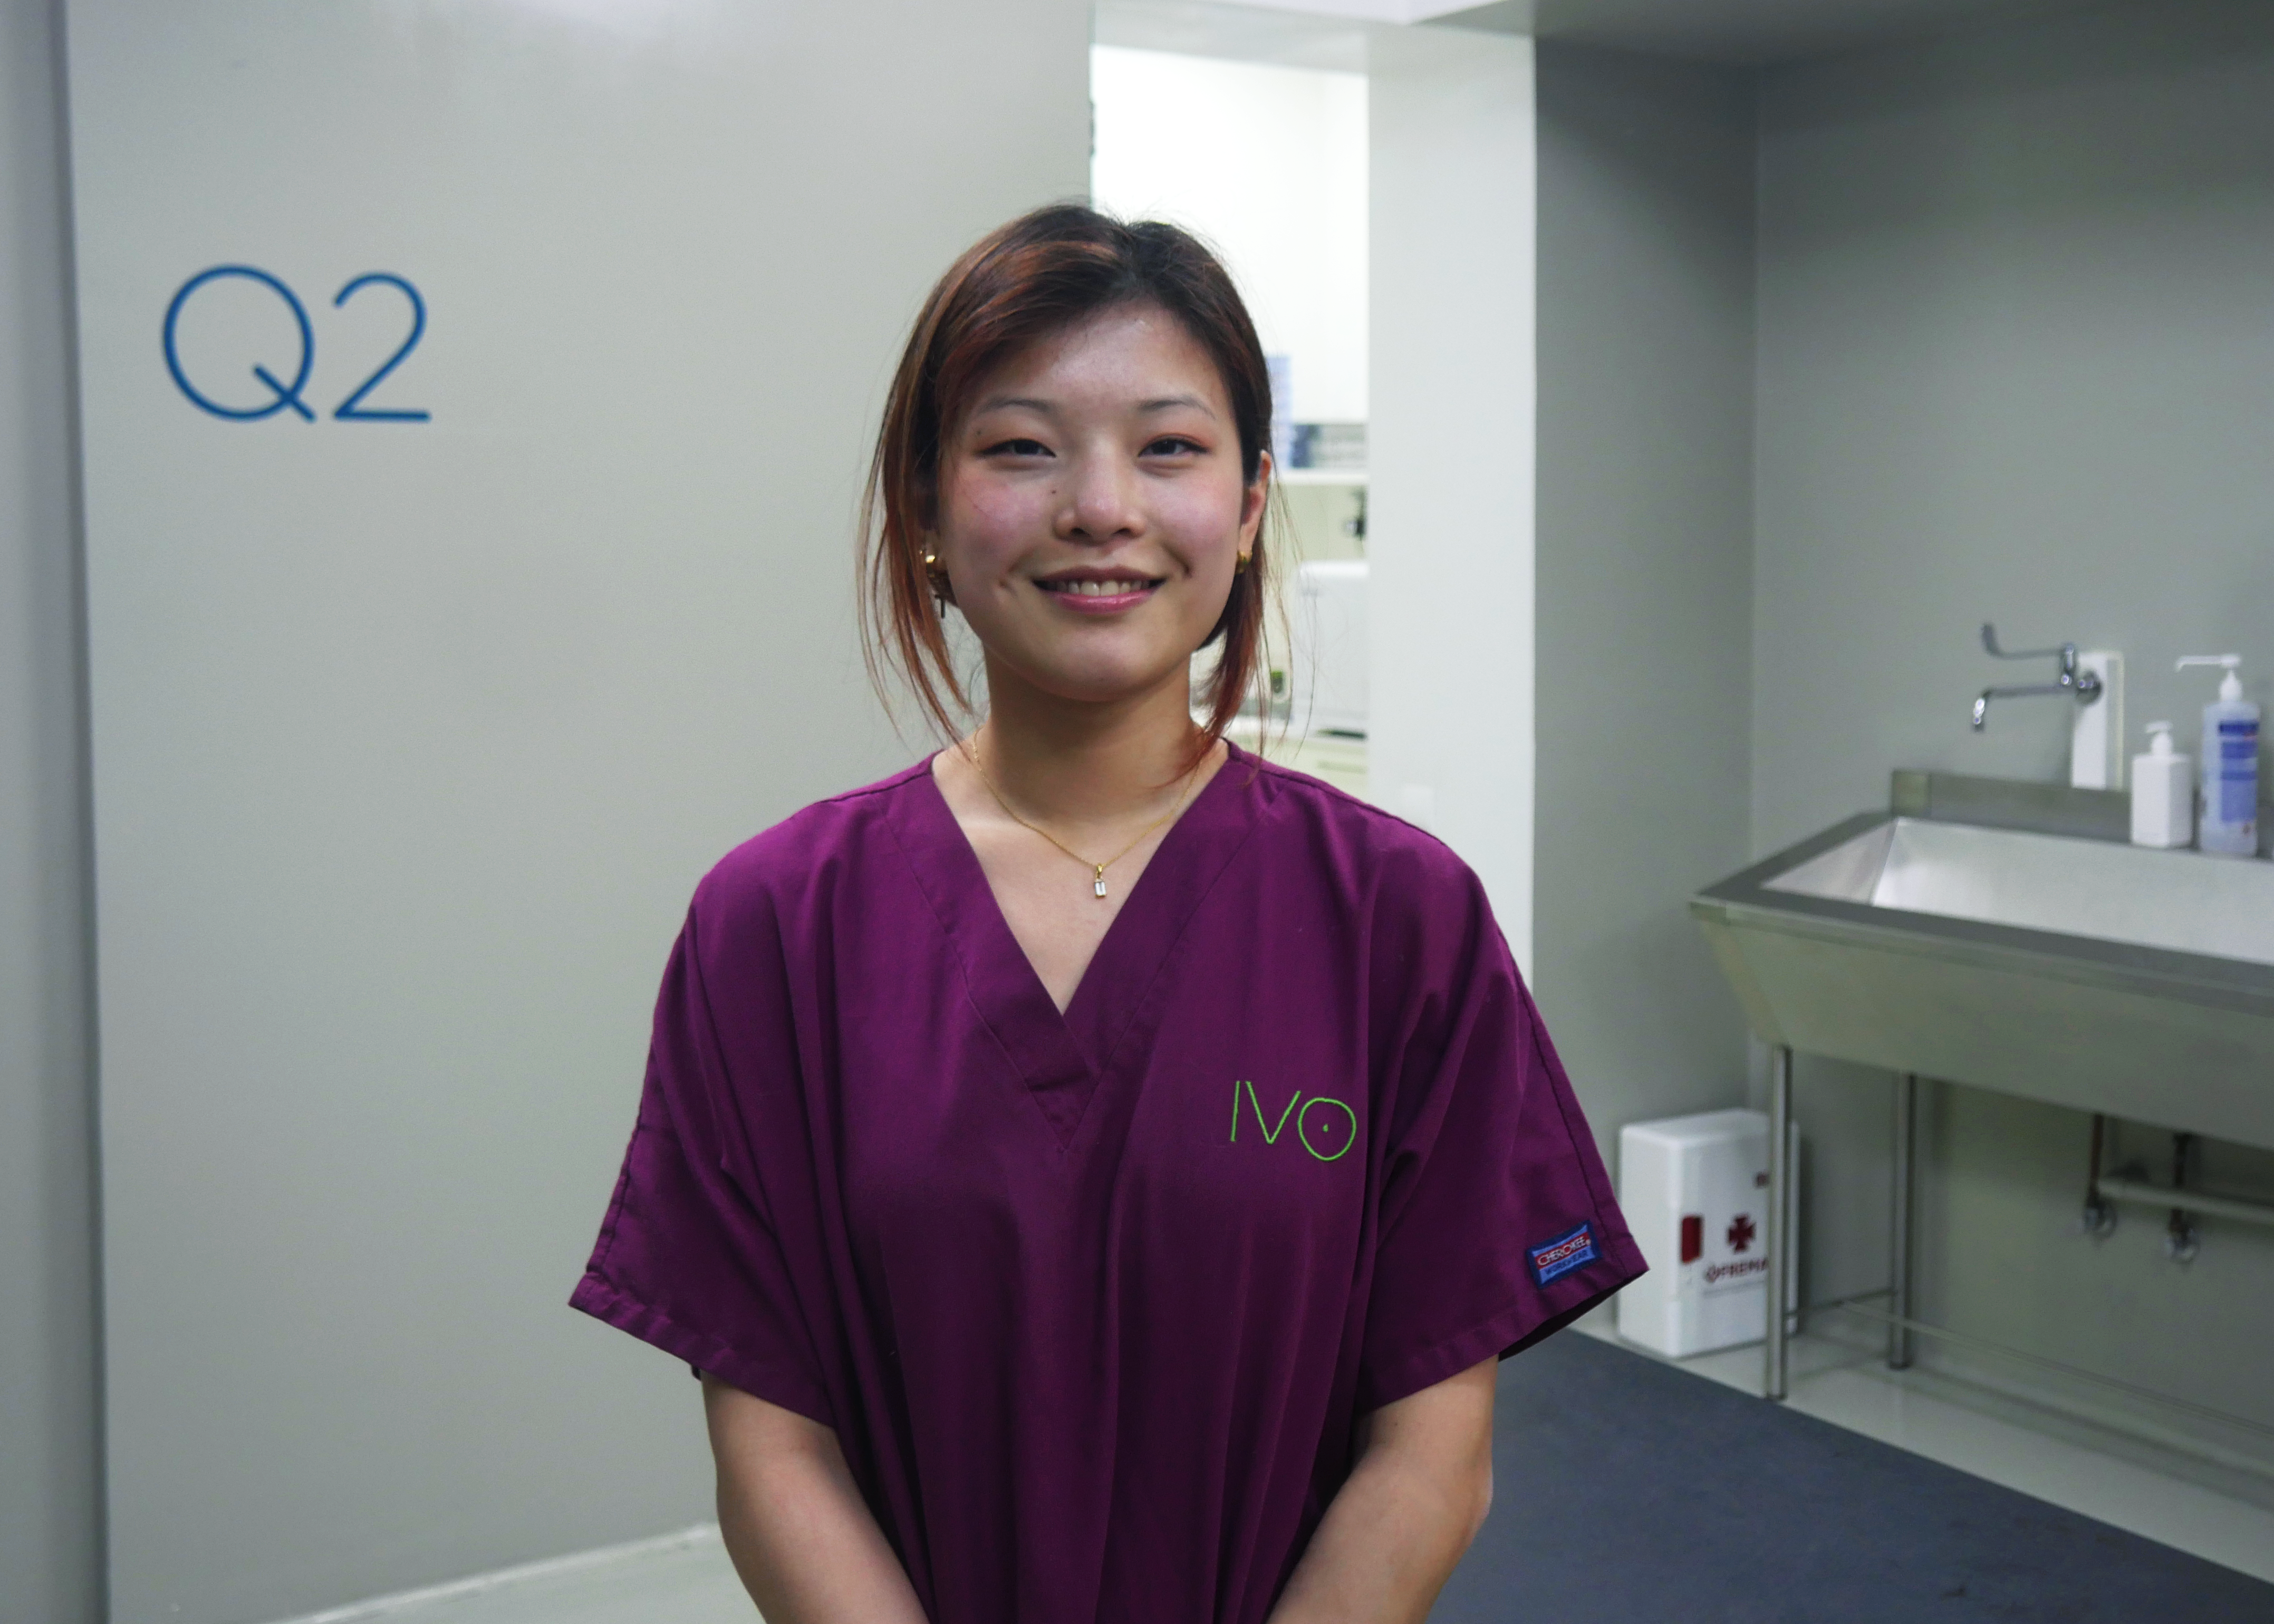 Yongshu Montejo, Asistente Técnico Veterinario (ATV) en IVO Oftalmología